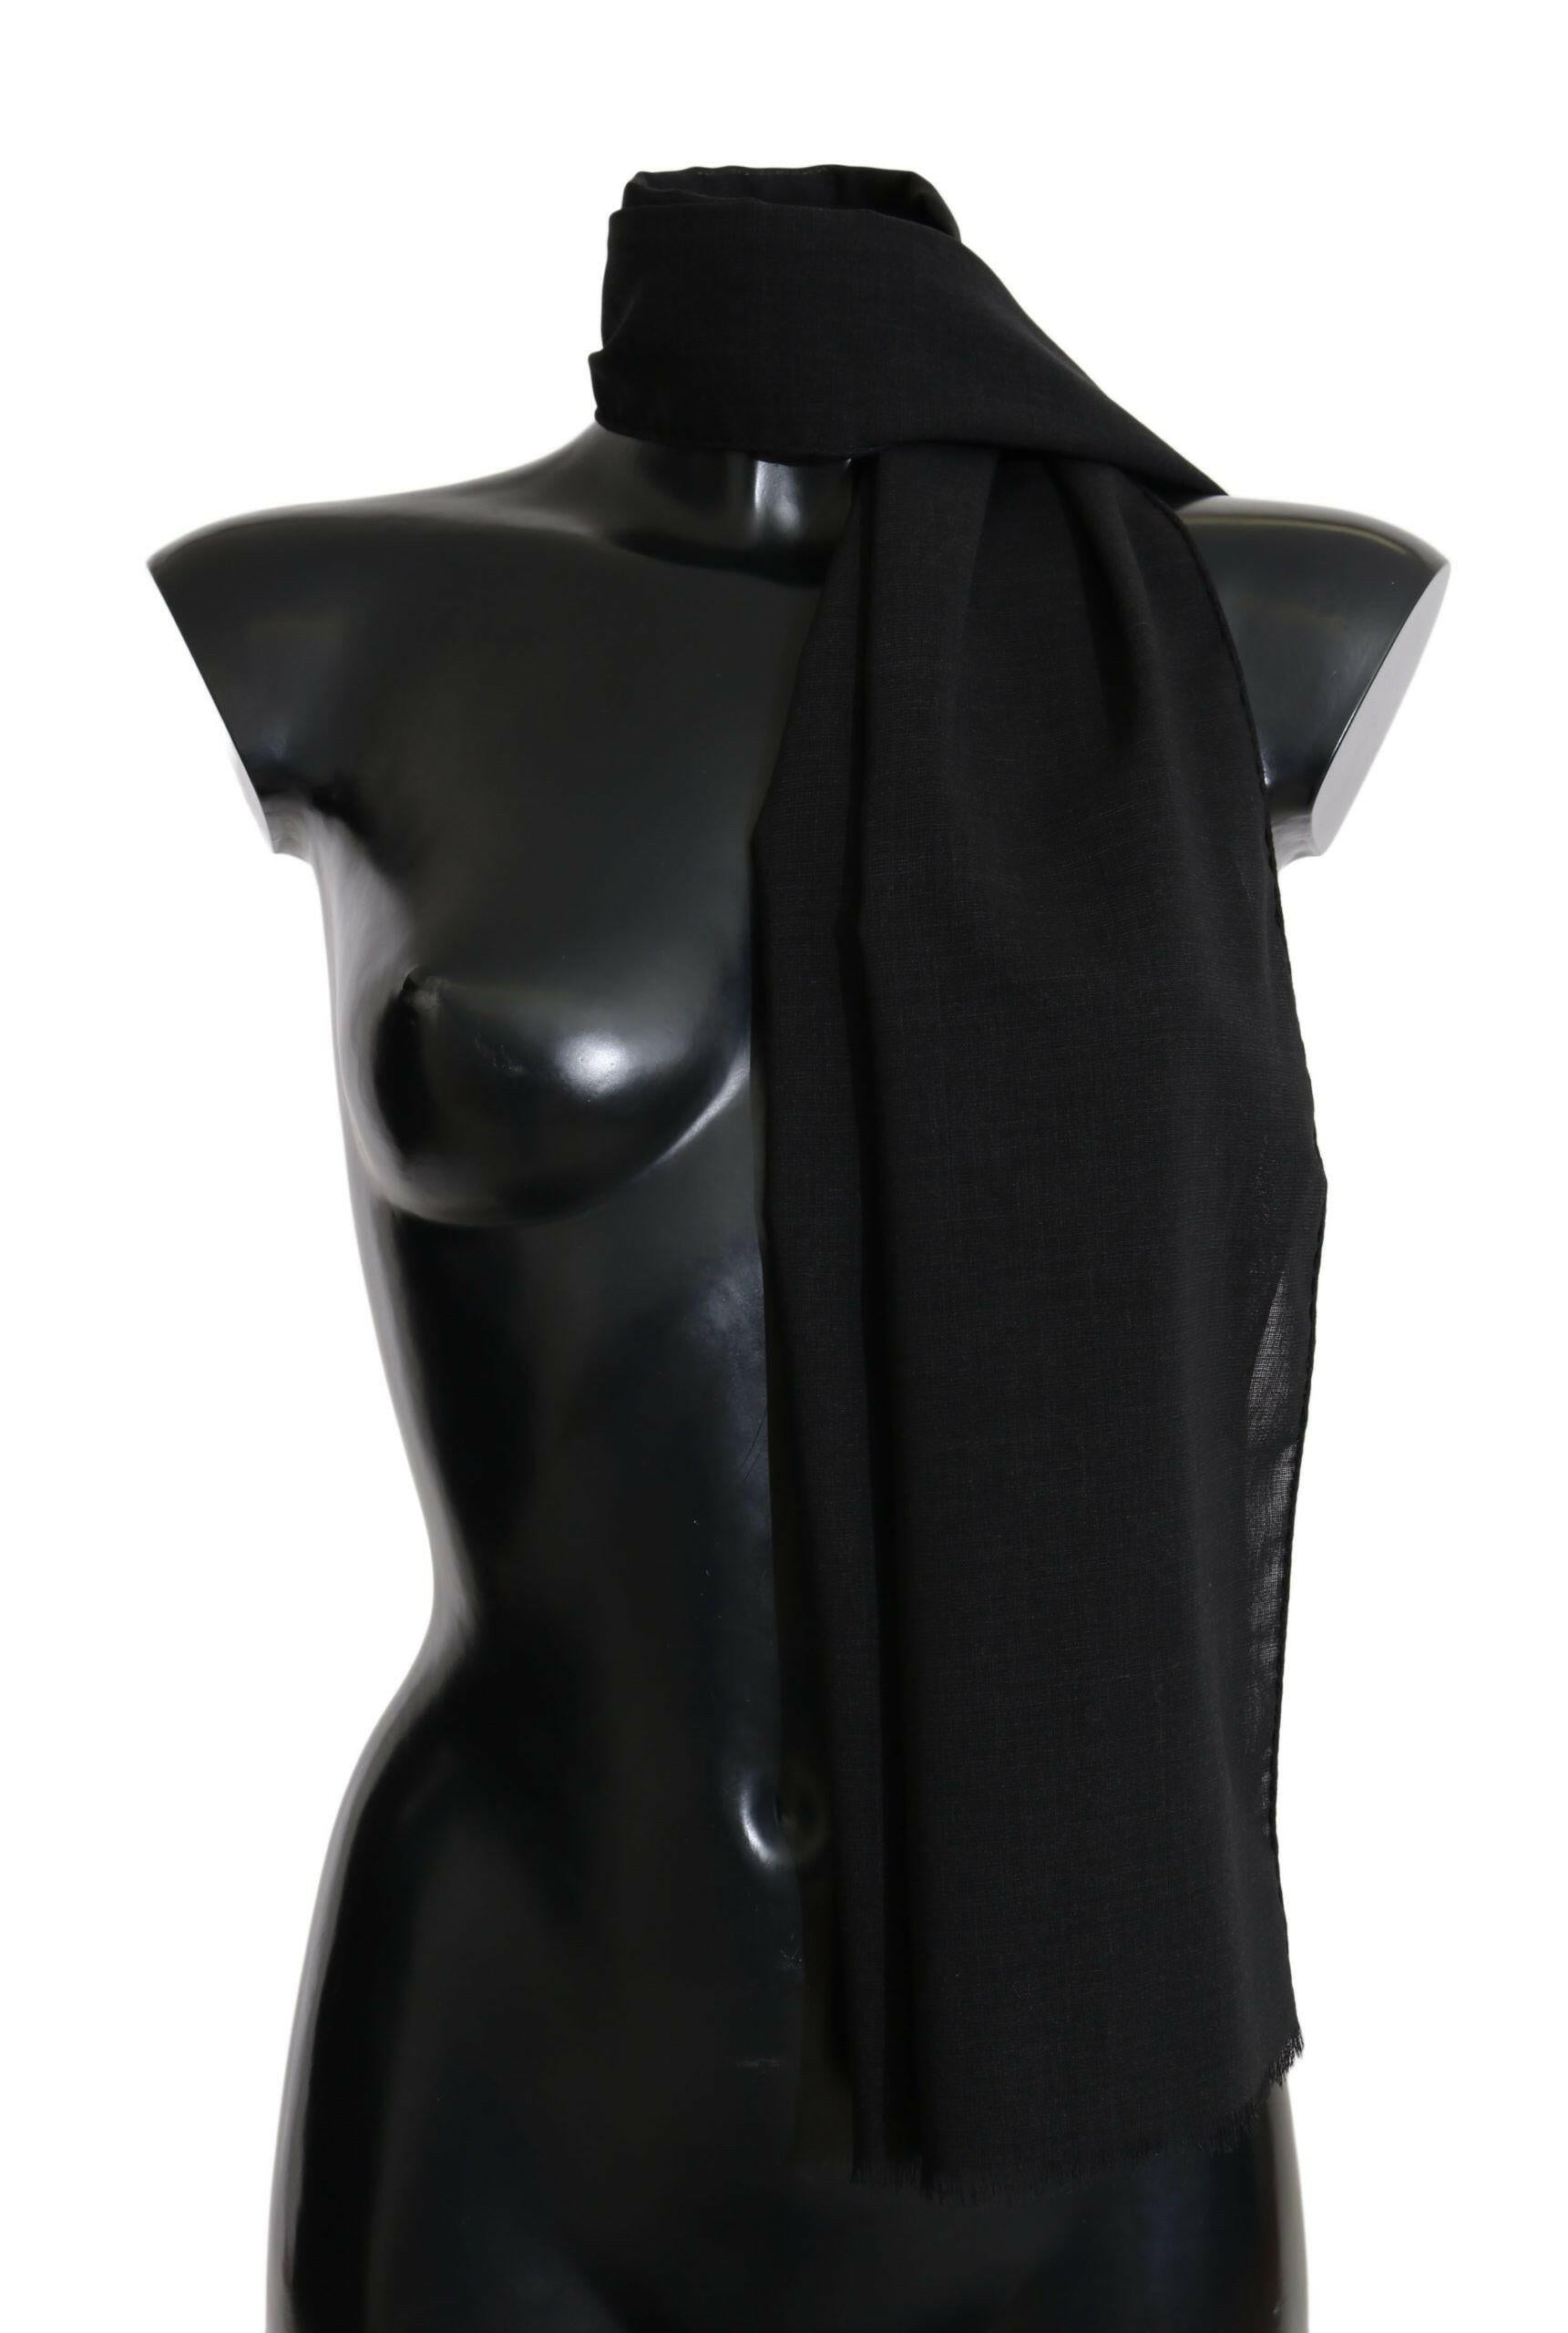 Dolce & Gabbana Solid Black Wool Blend Shawl Wrap 70cm X 200cm Scarf - GENUINE AUTHENTIC BRAND LLC  